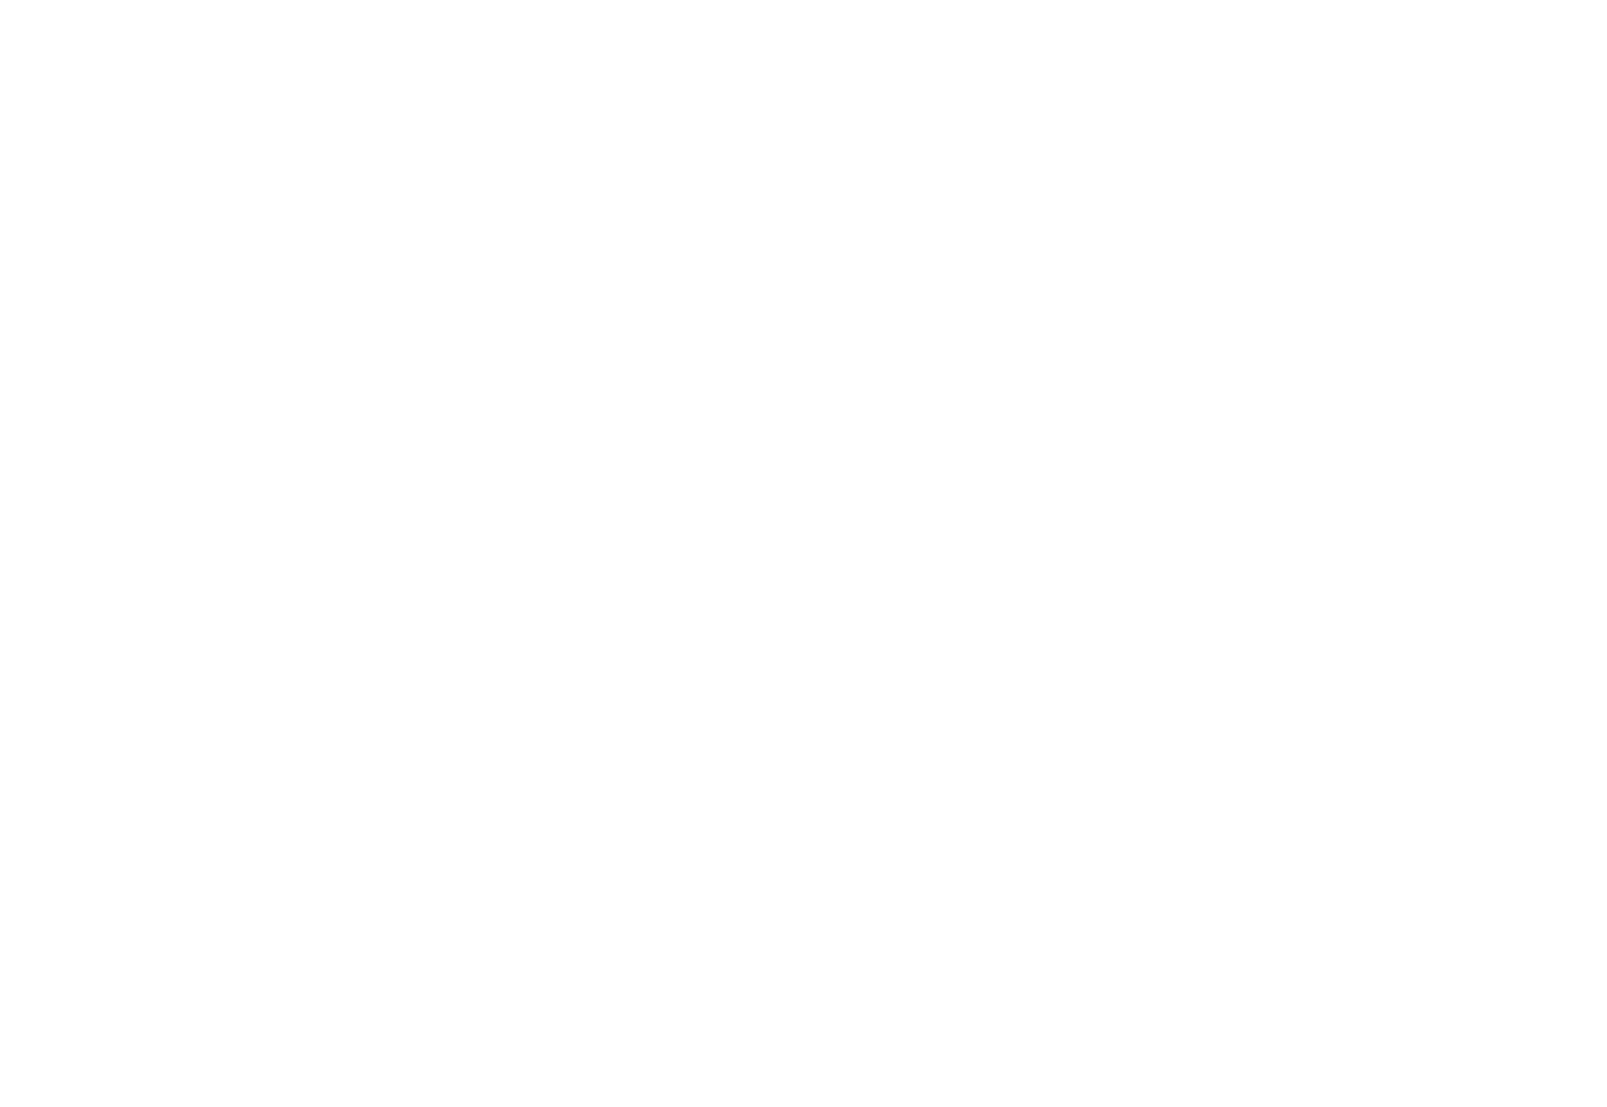 2022 ILLUMINATE Film Festival